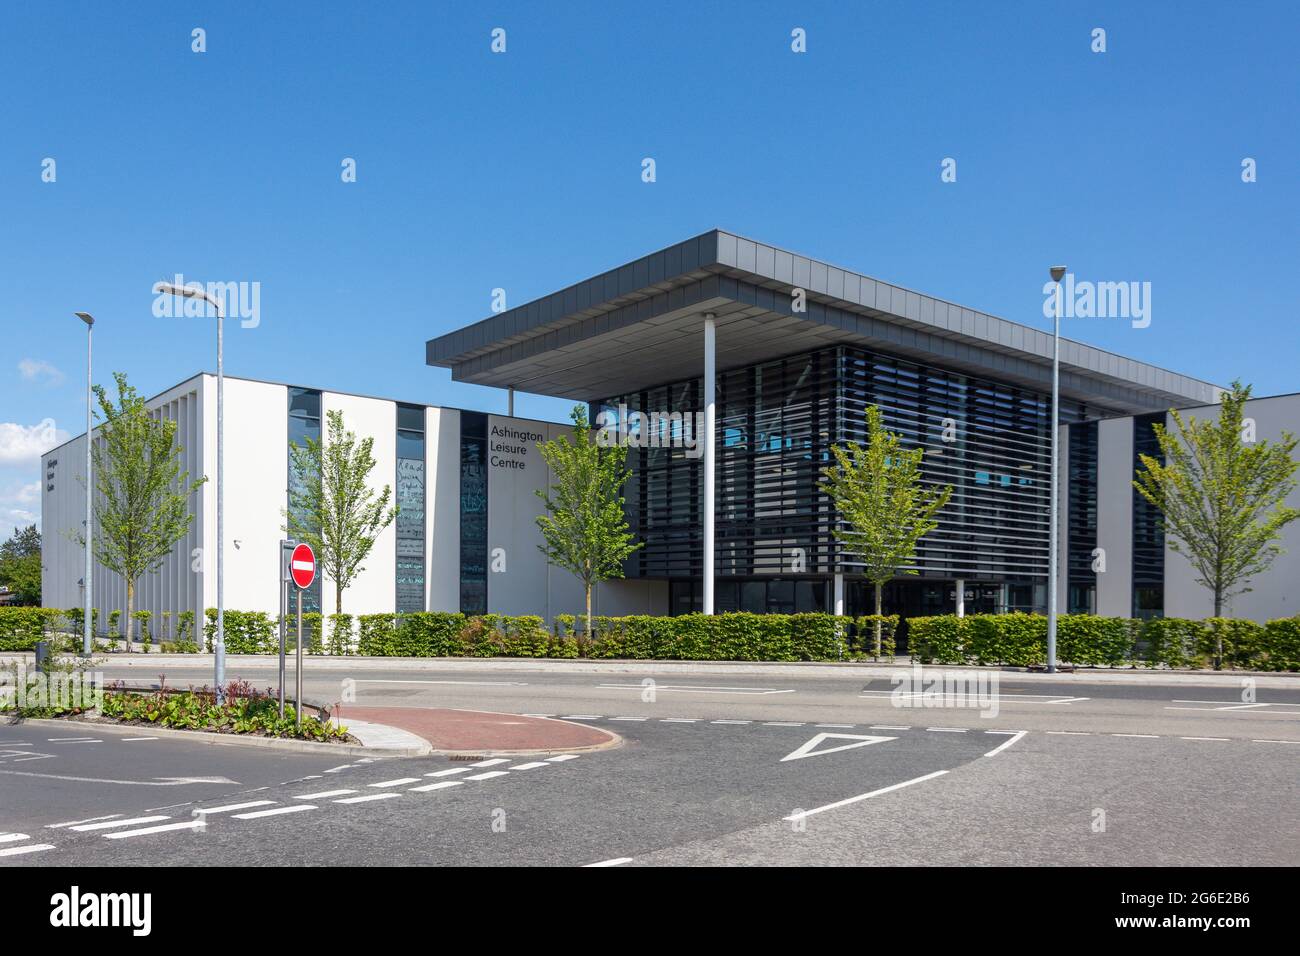 Centre de loisirs d'Ashington, Lintonville Terrace, Ashington, Northumberland, Angleterre, Royaume-Uni Banque D'Images